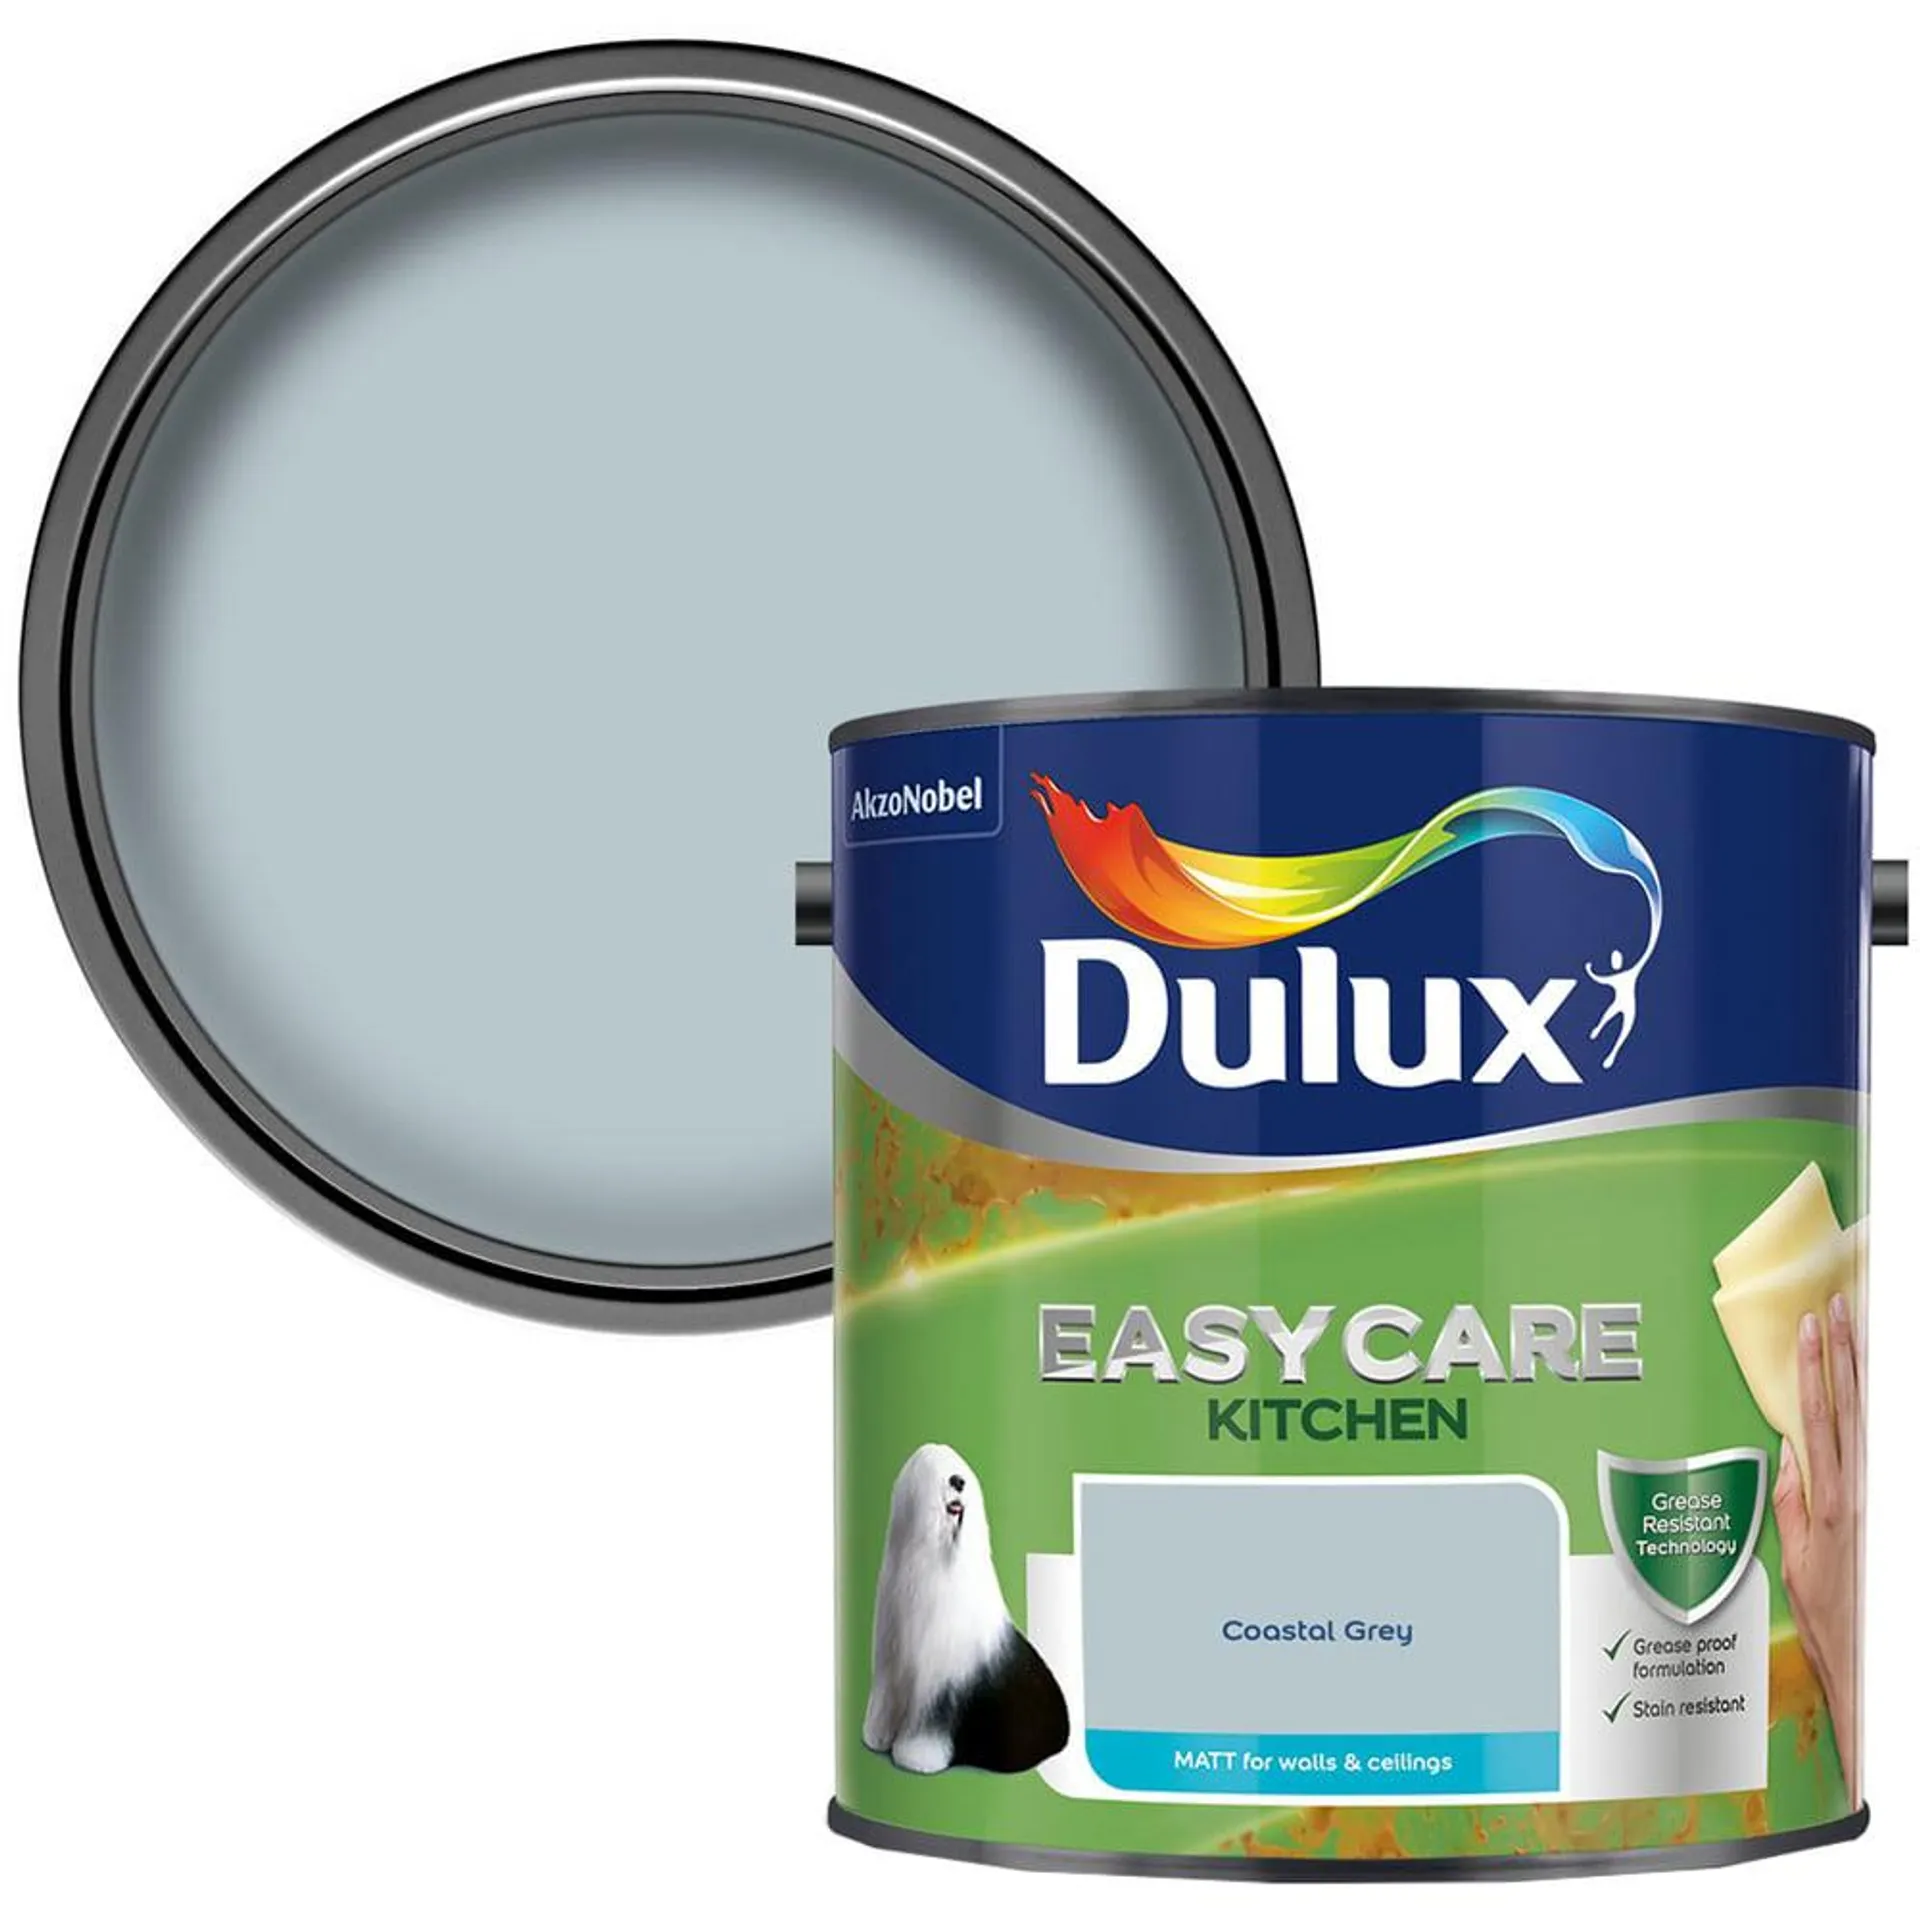 Dulux Easycare Kitchen Coastal Grey Paint 2.5L